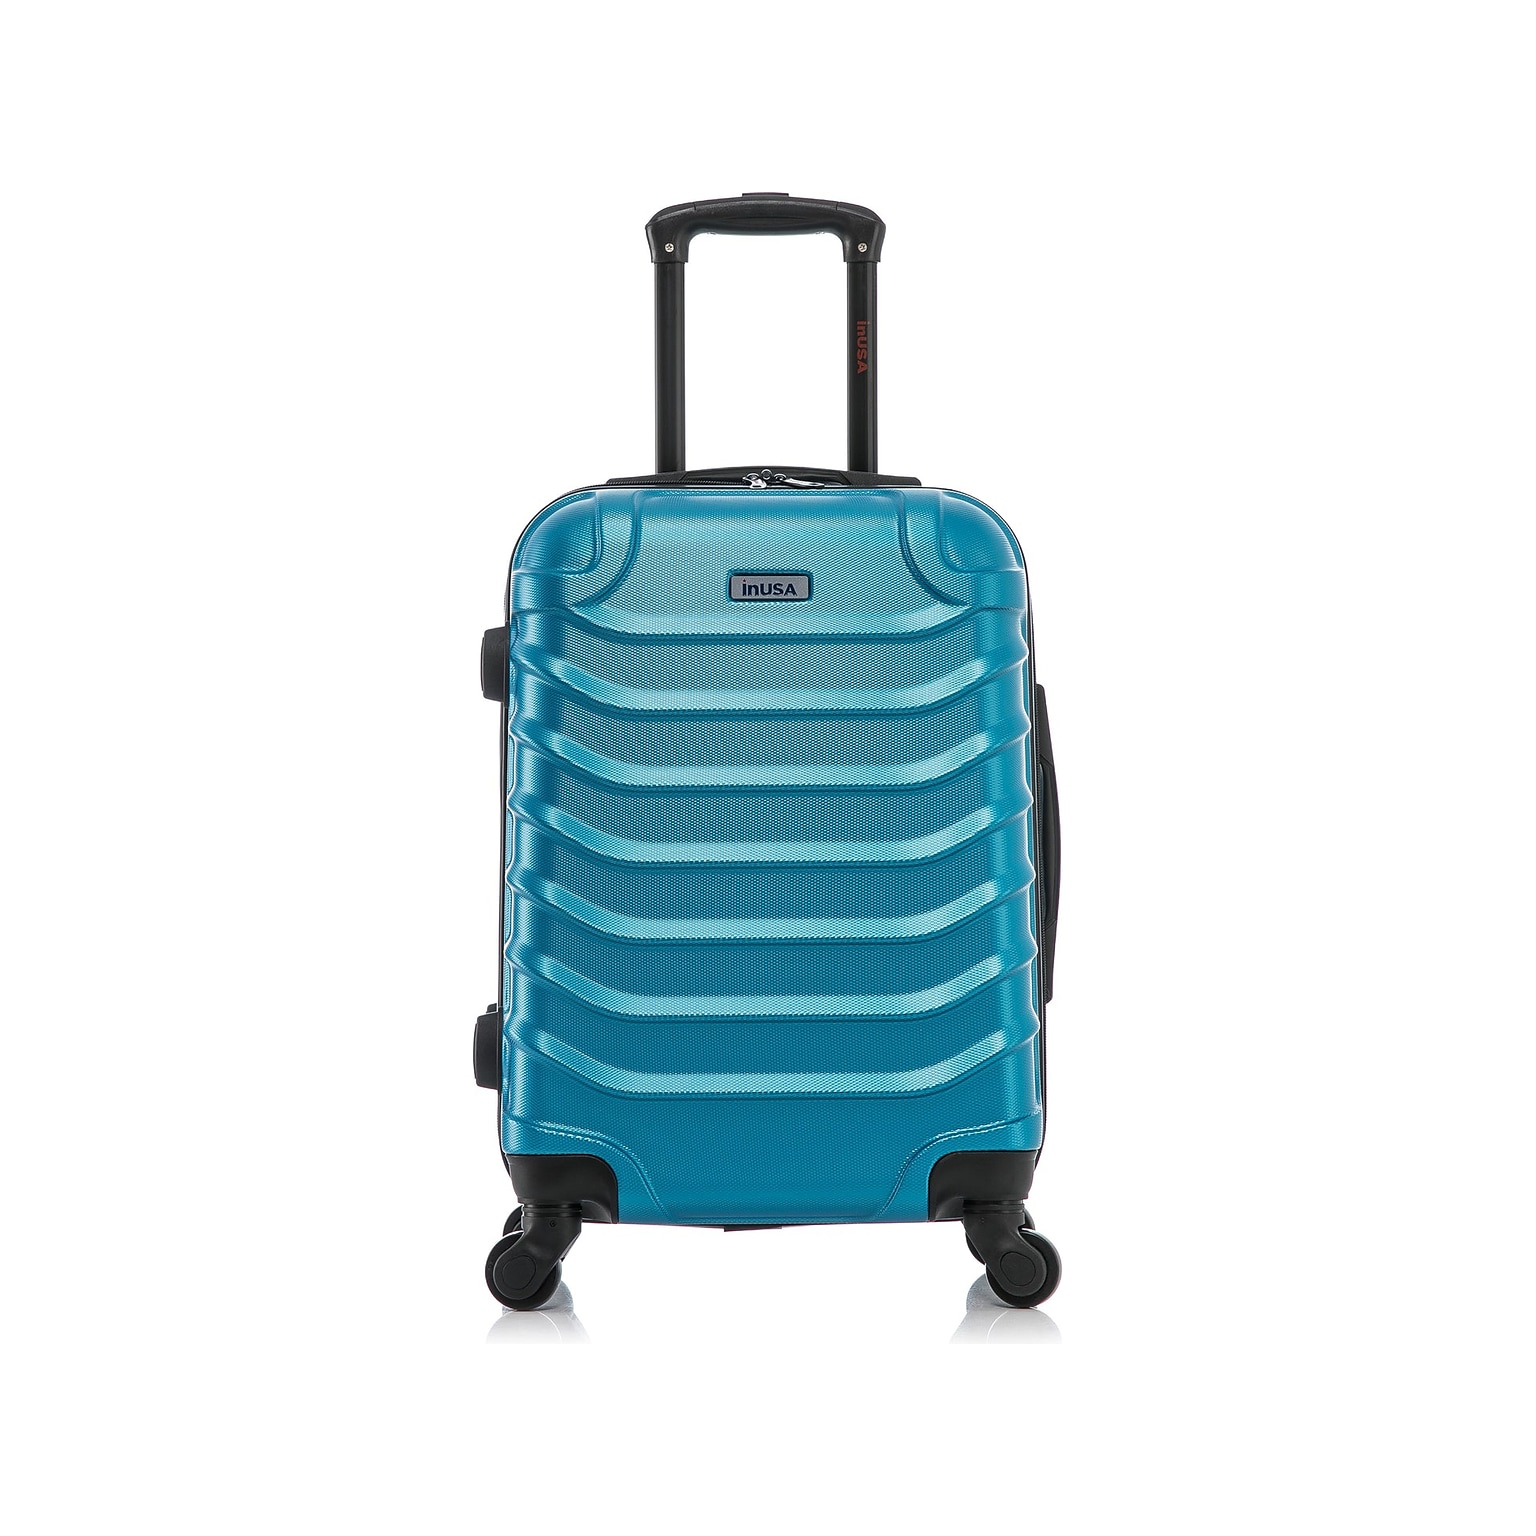 InUSA Endurance 25.39 Hardside Suitcase, 4-Wheeled Spinner, Teal (IUEND00M-TEA)